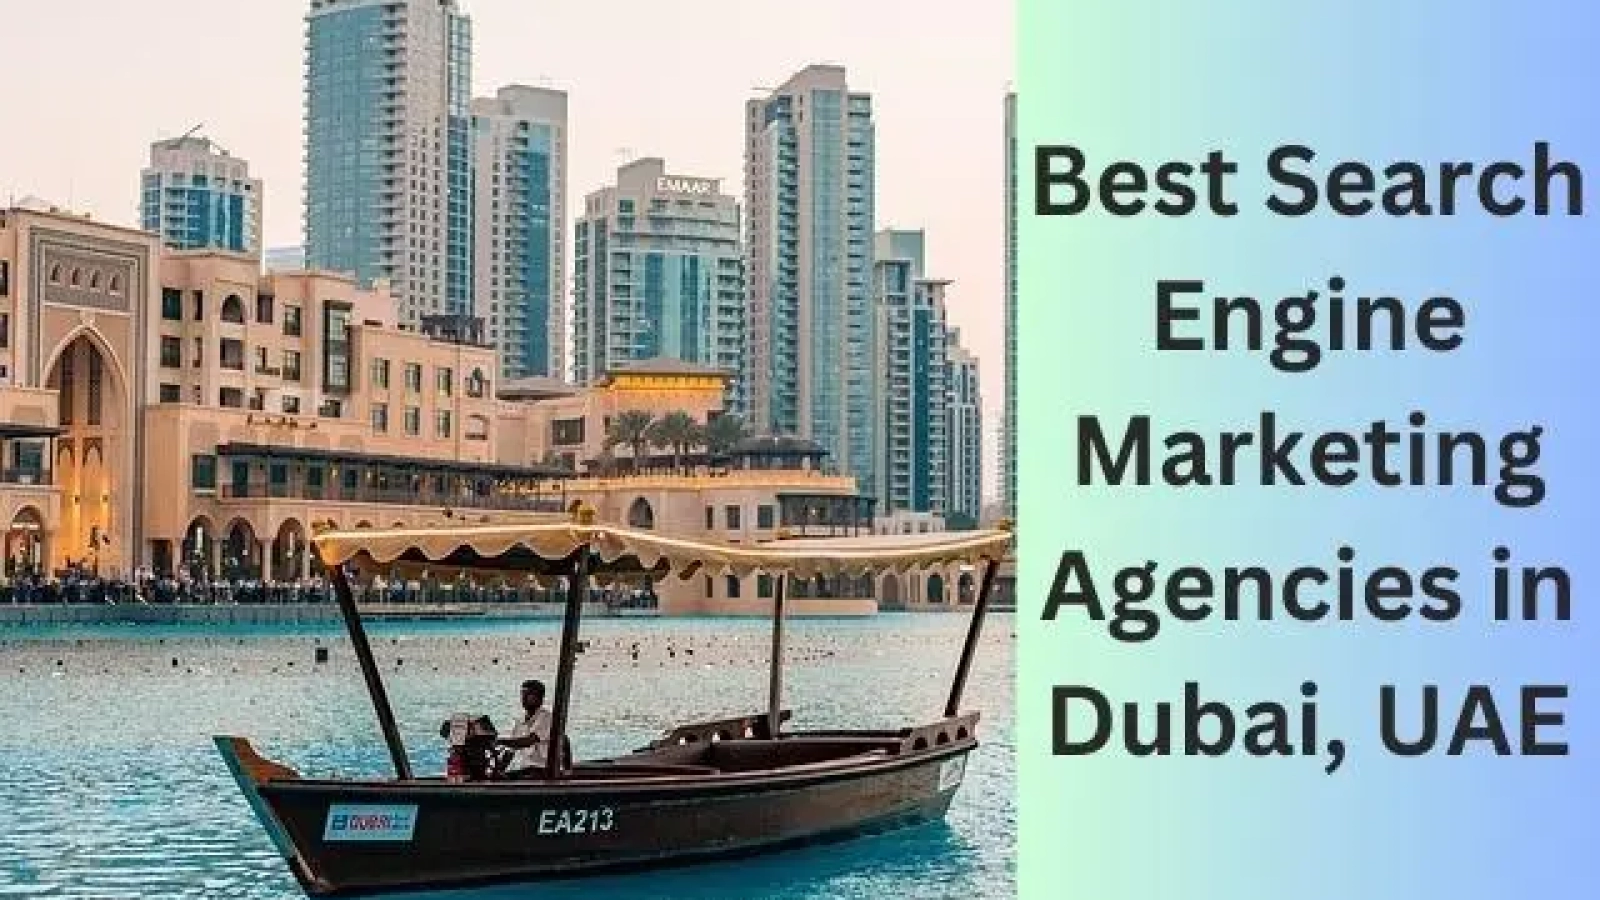 Best Search Engine Marketing Agencies in Dubai, UAE